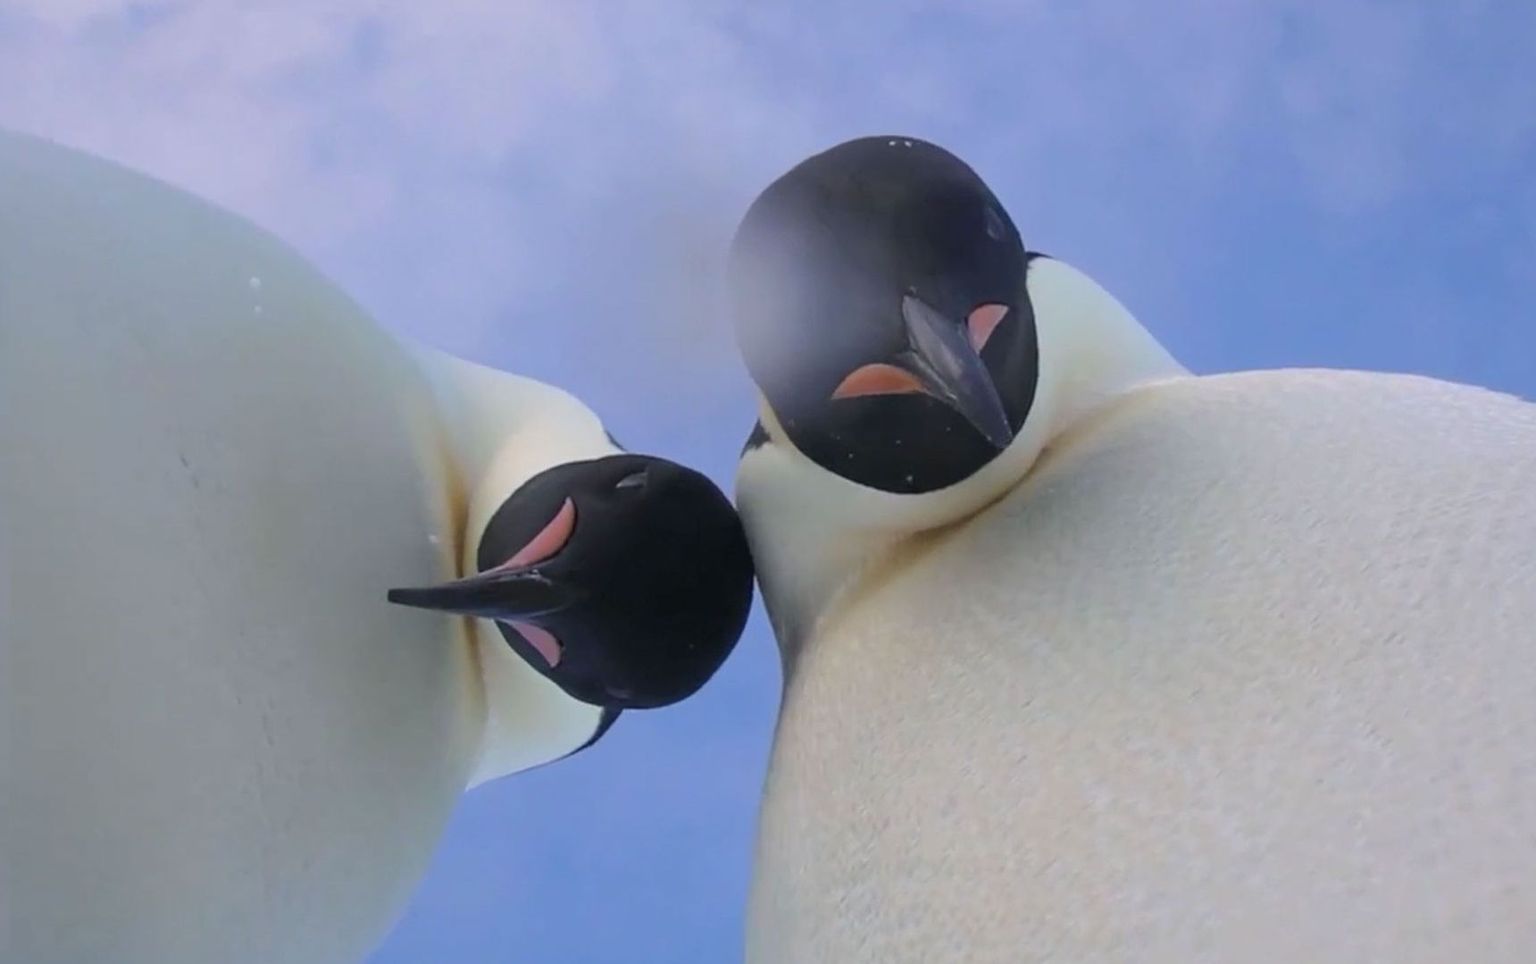 Keiserpingviinid